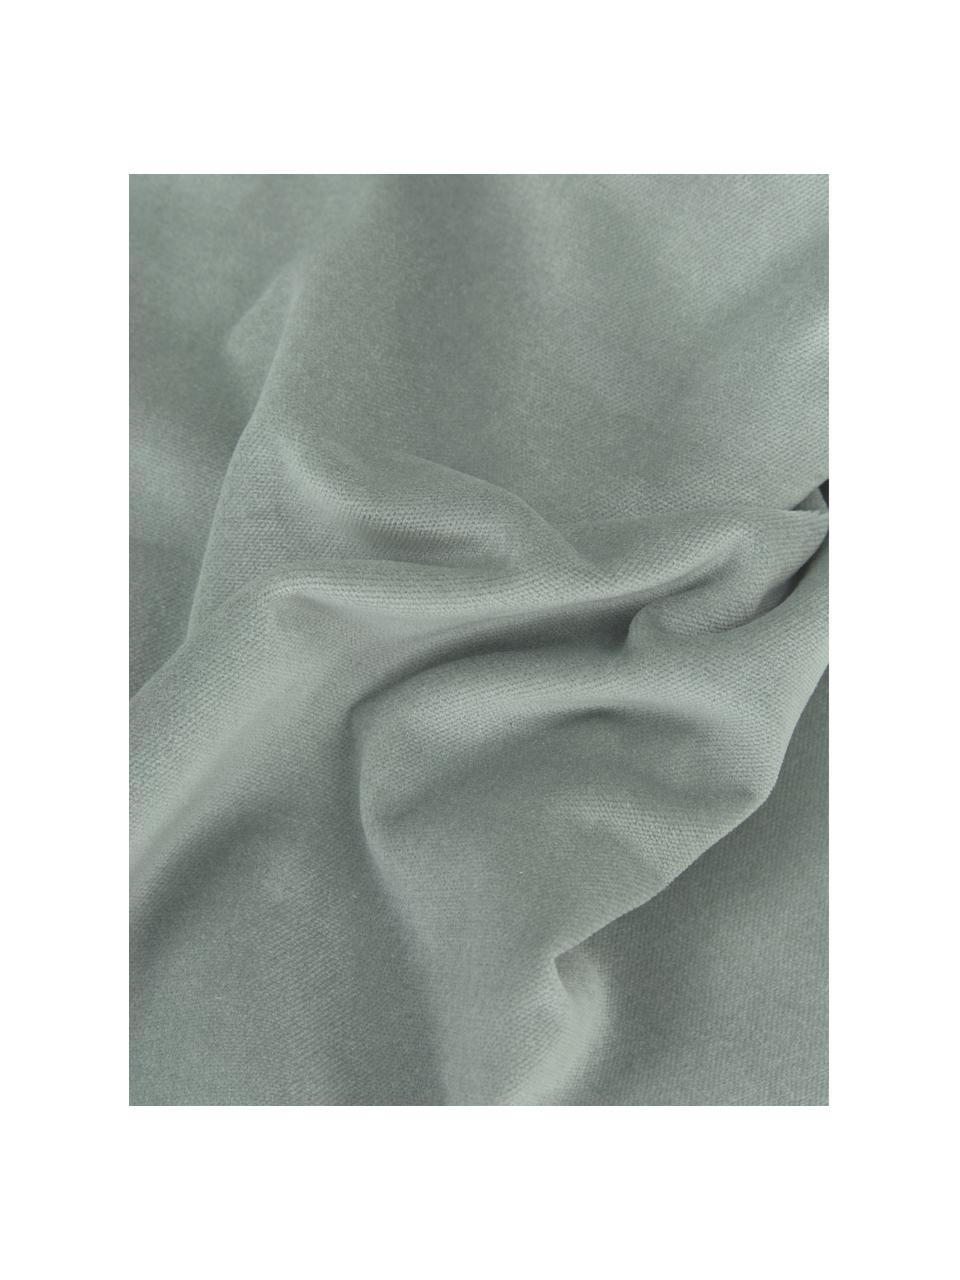 Poszewka na poduszkę z aksamitu Dana, 100% aksamit bawełniany, Szałwiowy zielony, S 40 x D 40 cm